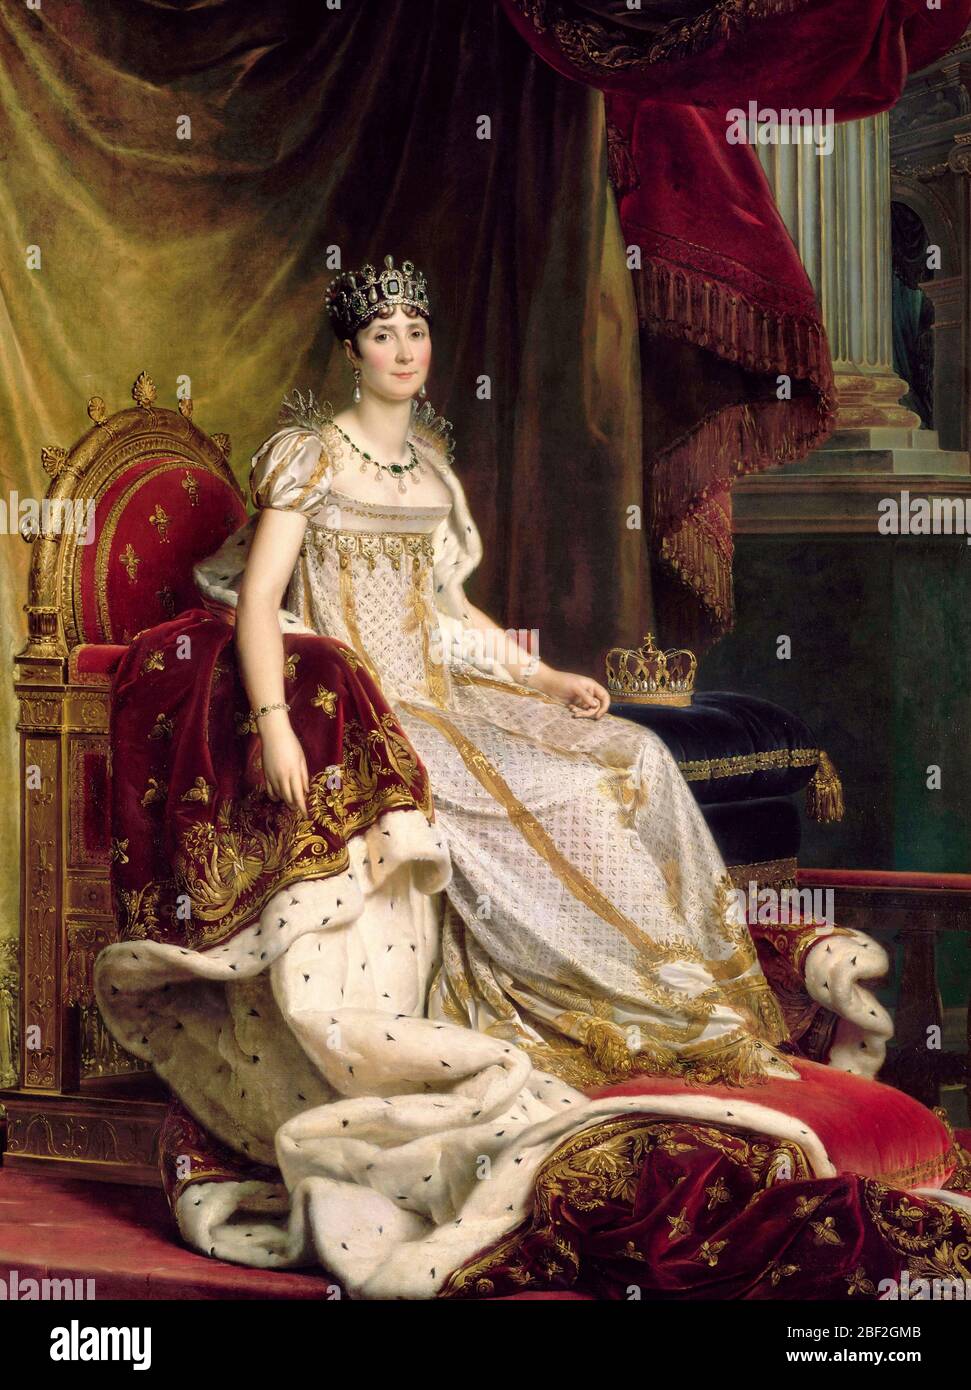 Empress Josephine dans des robes de couronnement - François Gerard, vers 1807 Banque D'Images